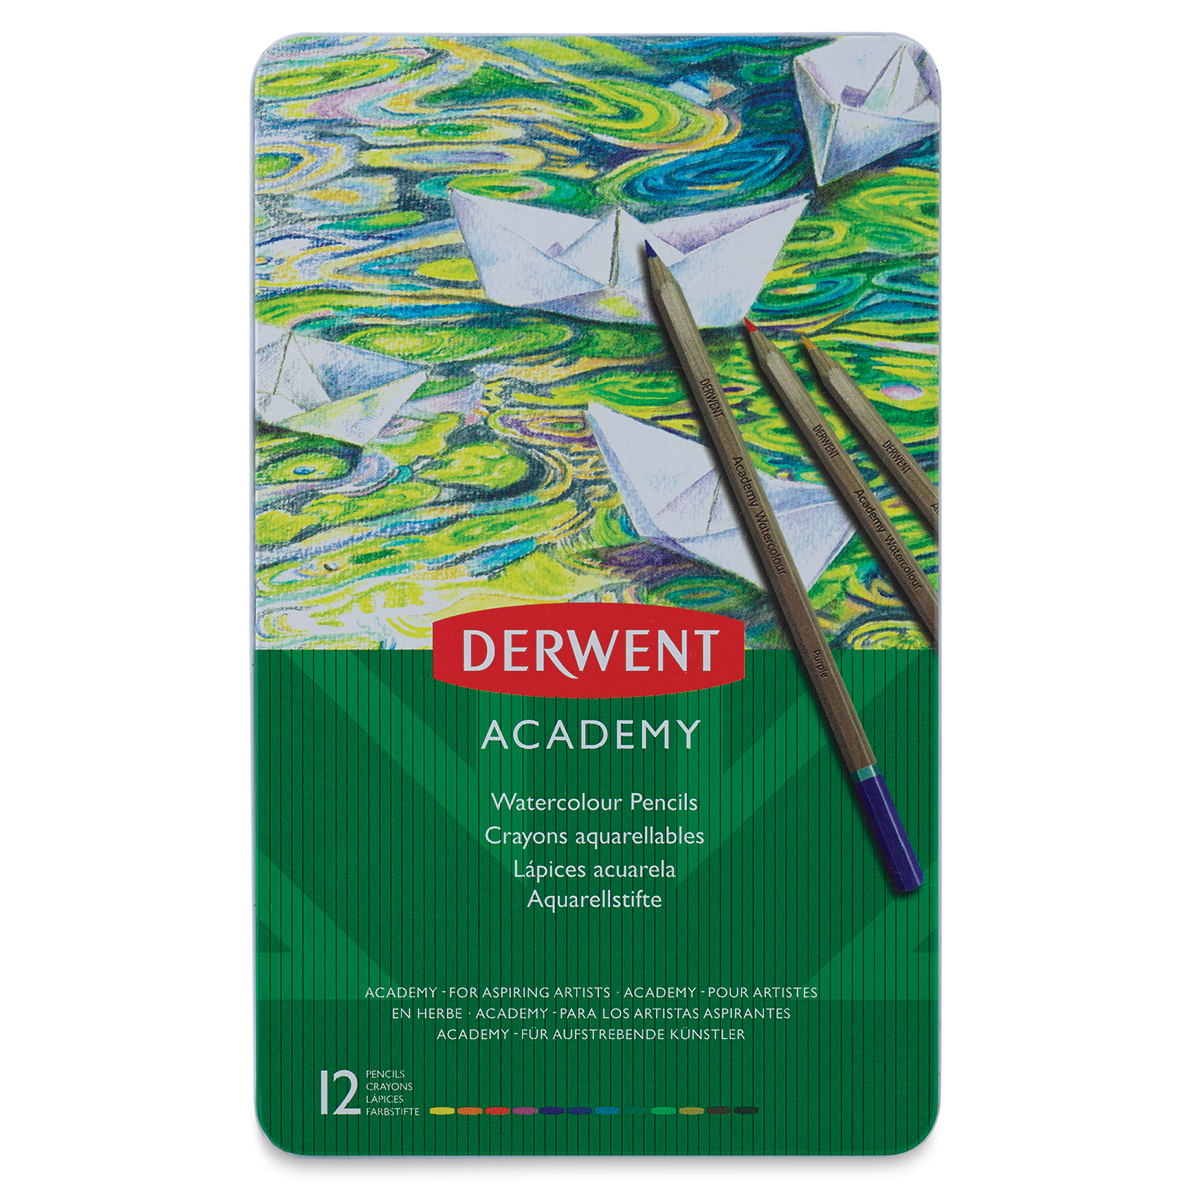 Derwent Academy Watercolor Pencils Review - BestColoredPencils